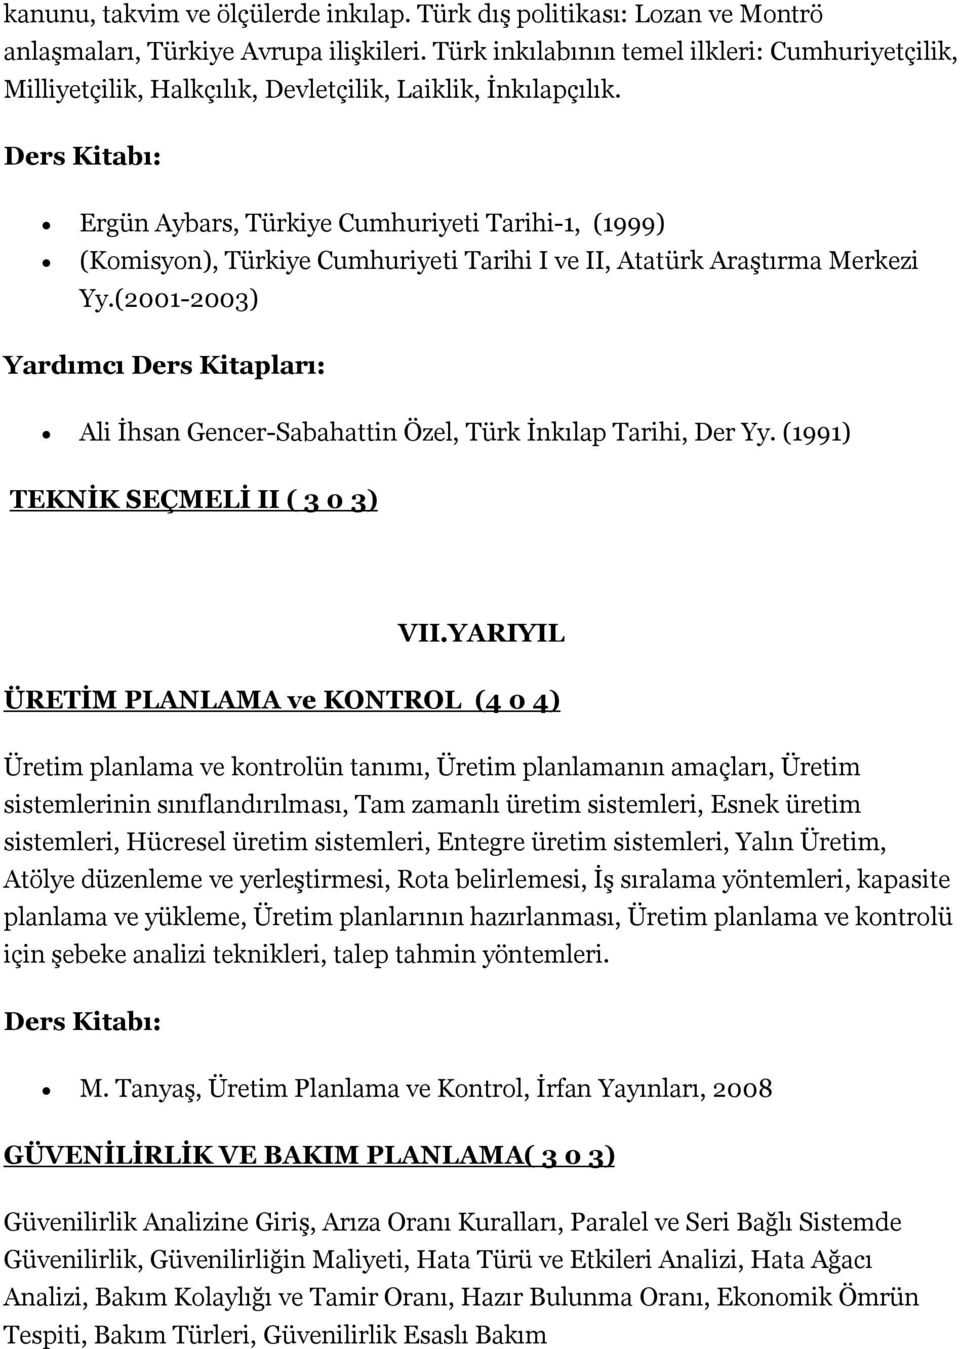 Ergün Aybars, Türkiye Cumhuriyeti Tarihi-1, (1999) (Komisyon), Türkiye Cumhuriyeti Tarihi I ve II, Atatürk Araştırma Merkezi Yy.